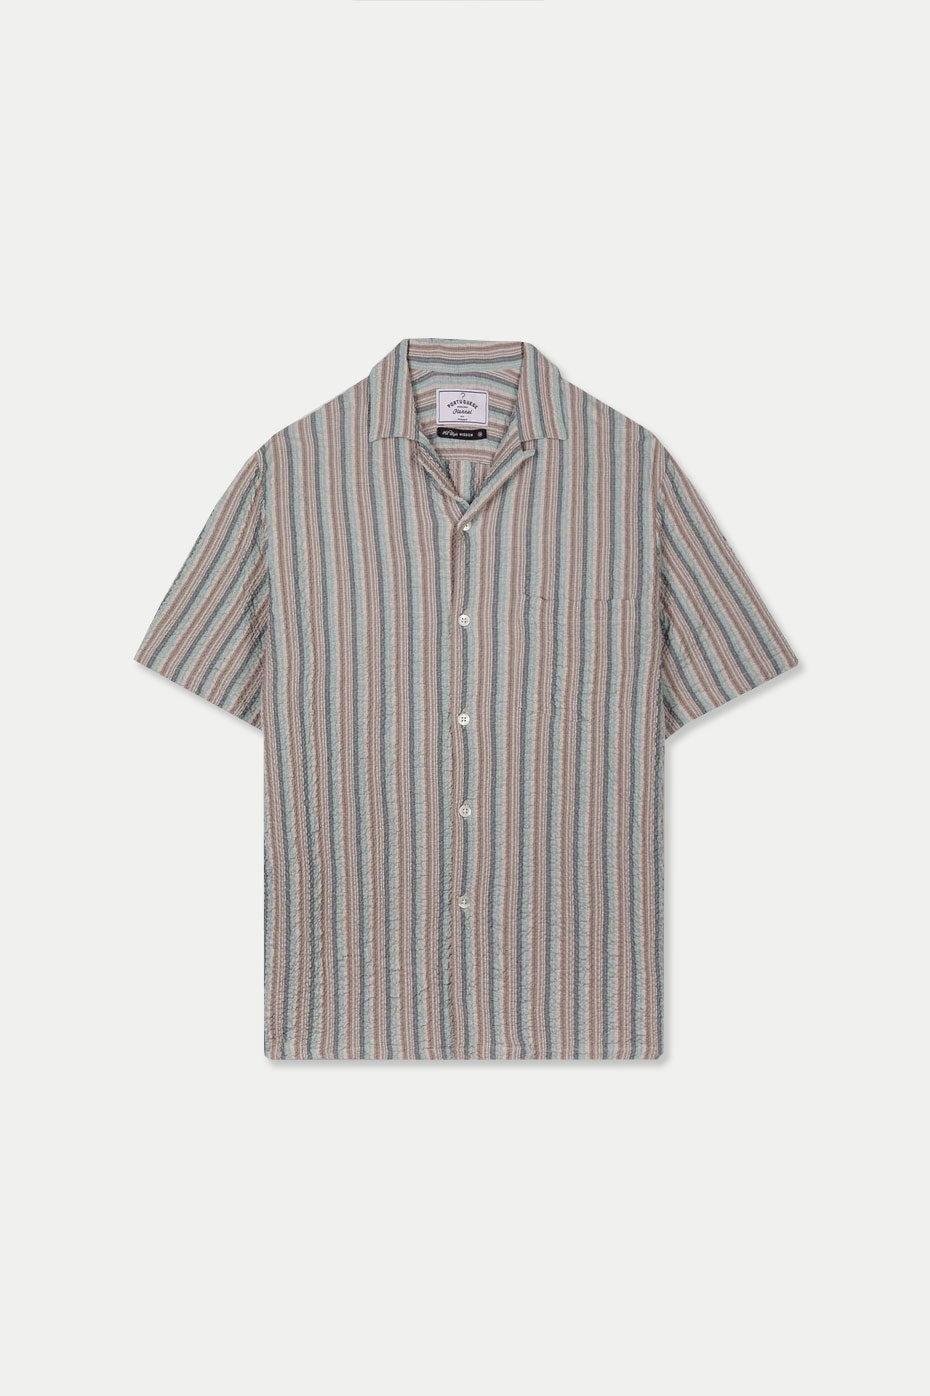  Portuguese Flannel Multi Rigged Stripe Shirt